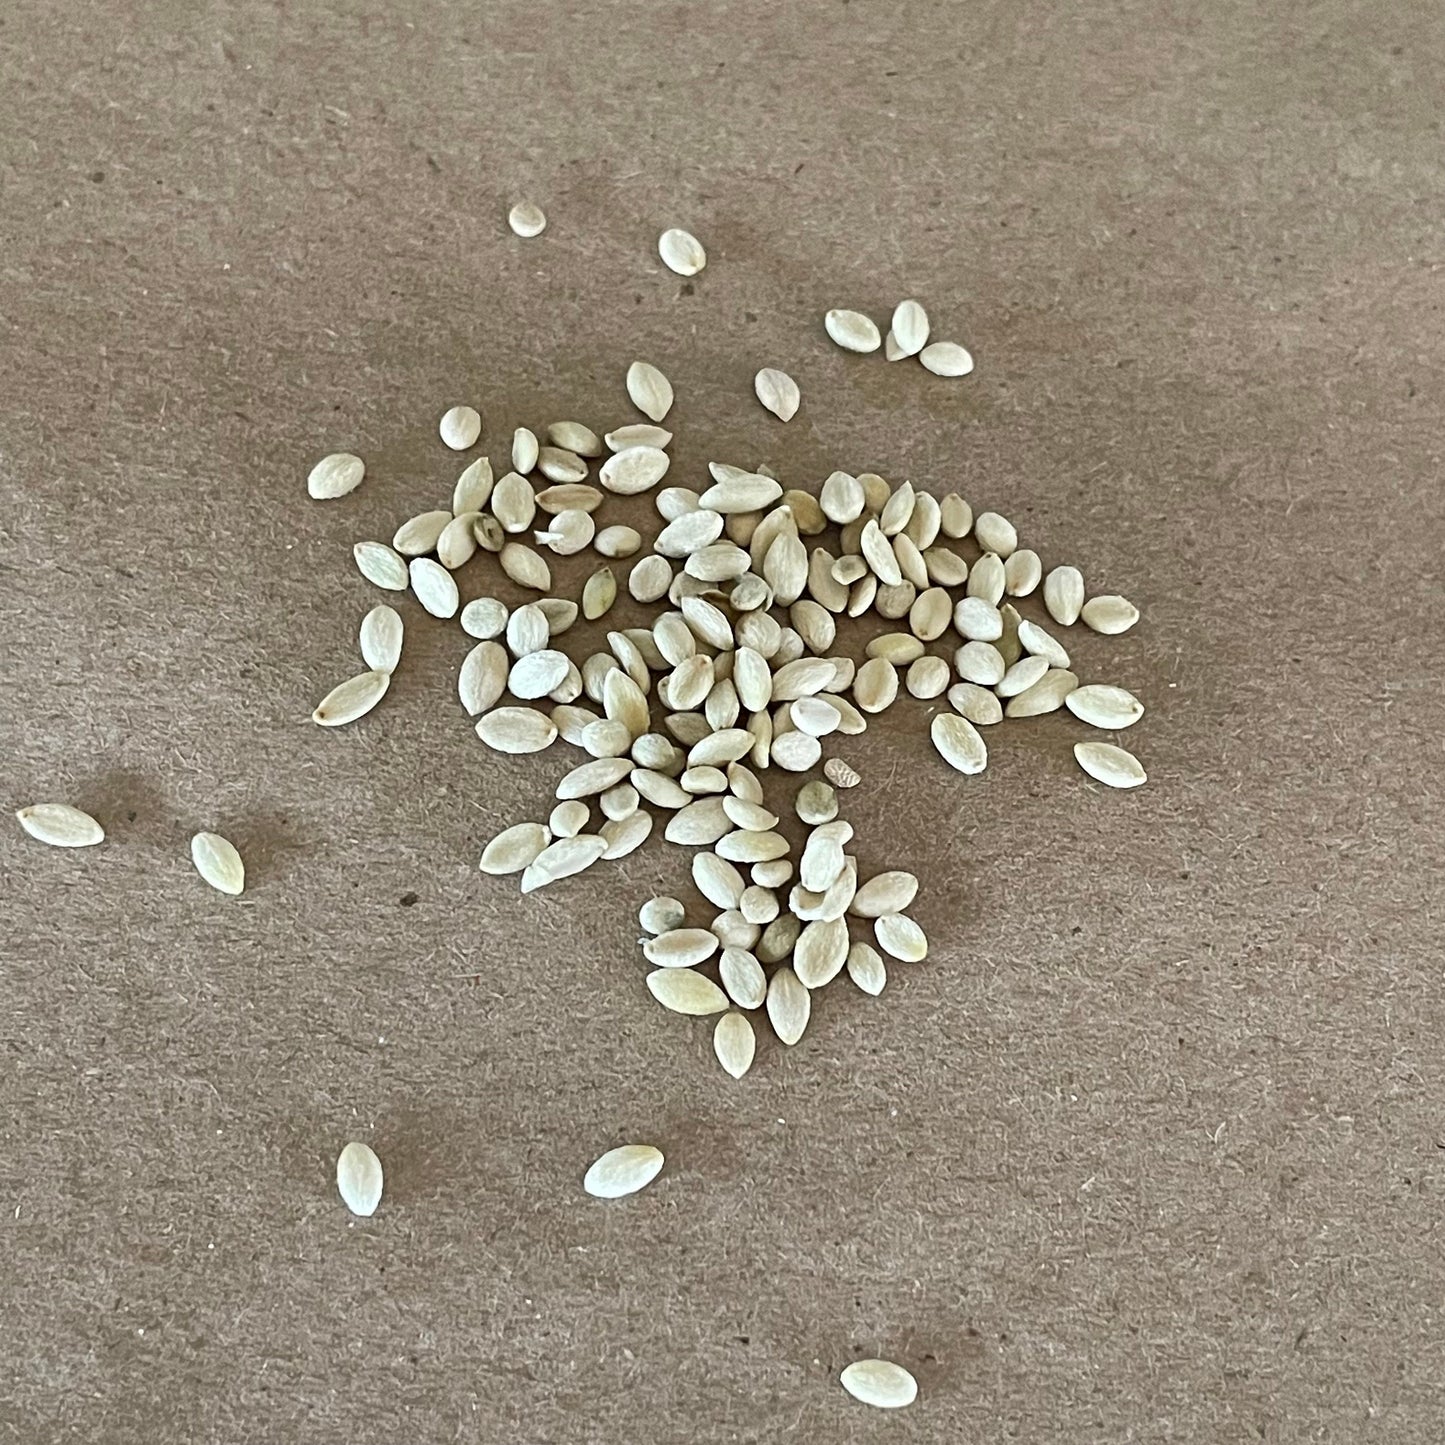 Snowberry Seeds (Symphoricarpos albus) - Wild Native Perennial Shrub - 40+ Seeds